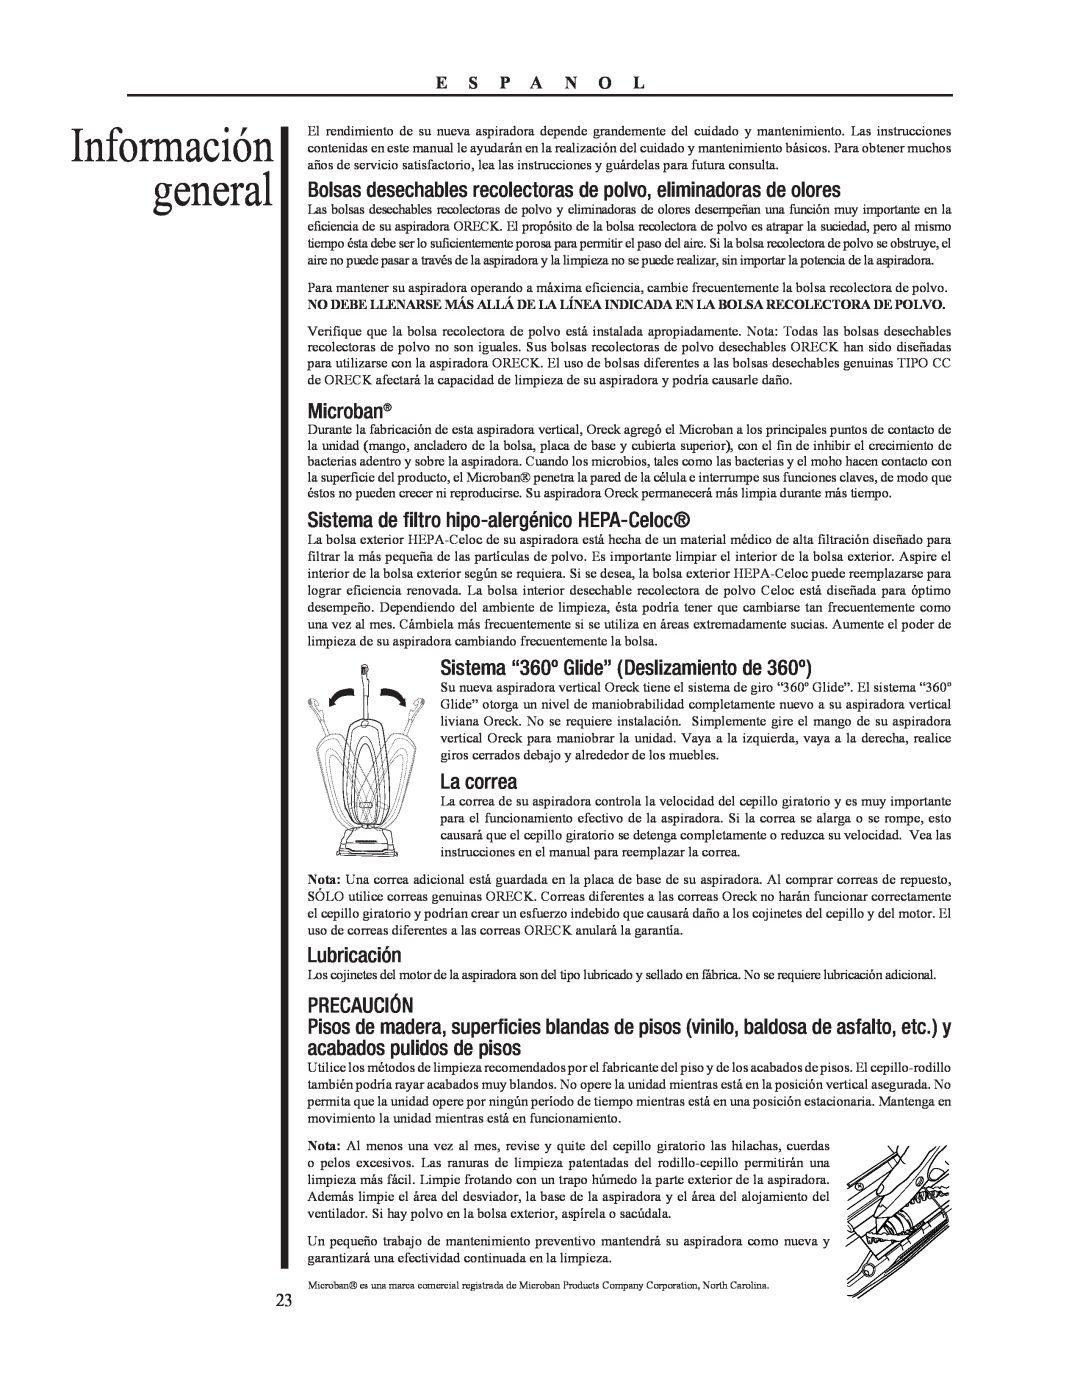 Oreck 79053-01REVA Información general, Sistema de filtro hipo-alergénico HEPA-Celoc, La correa, Lubricación, Precaución 